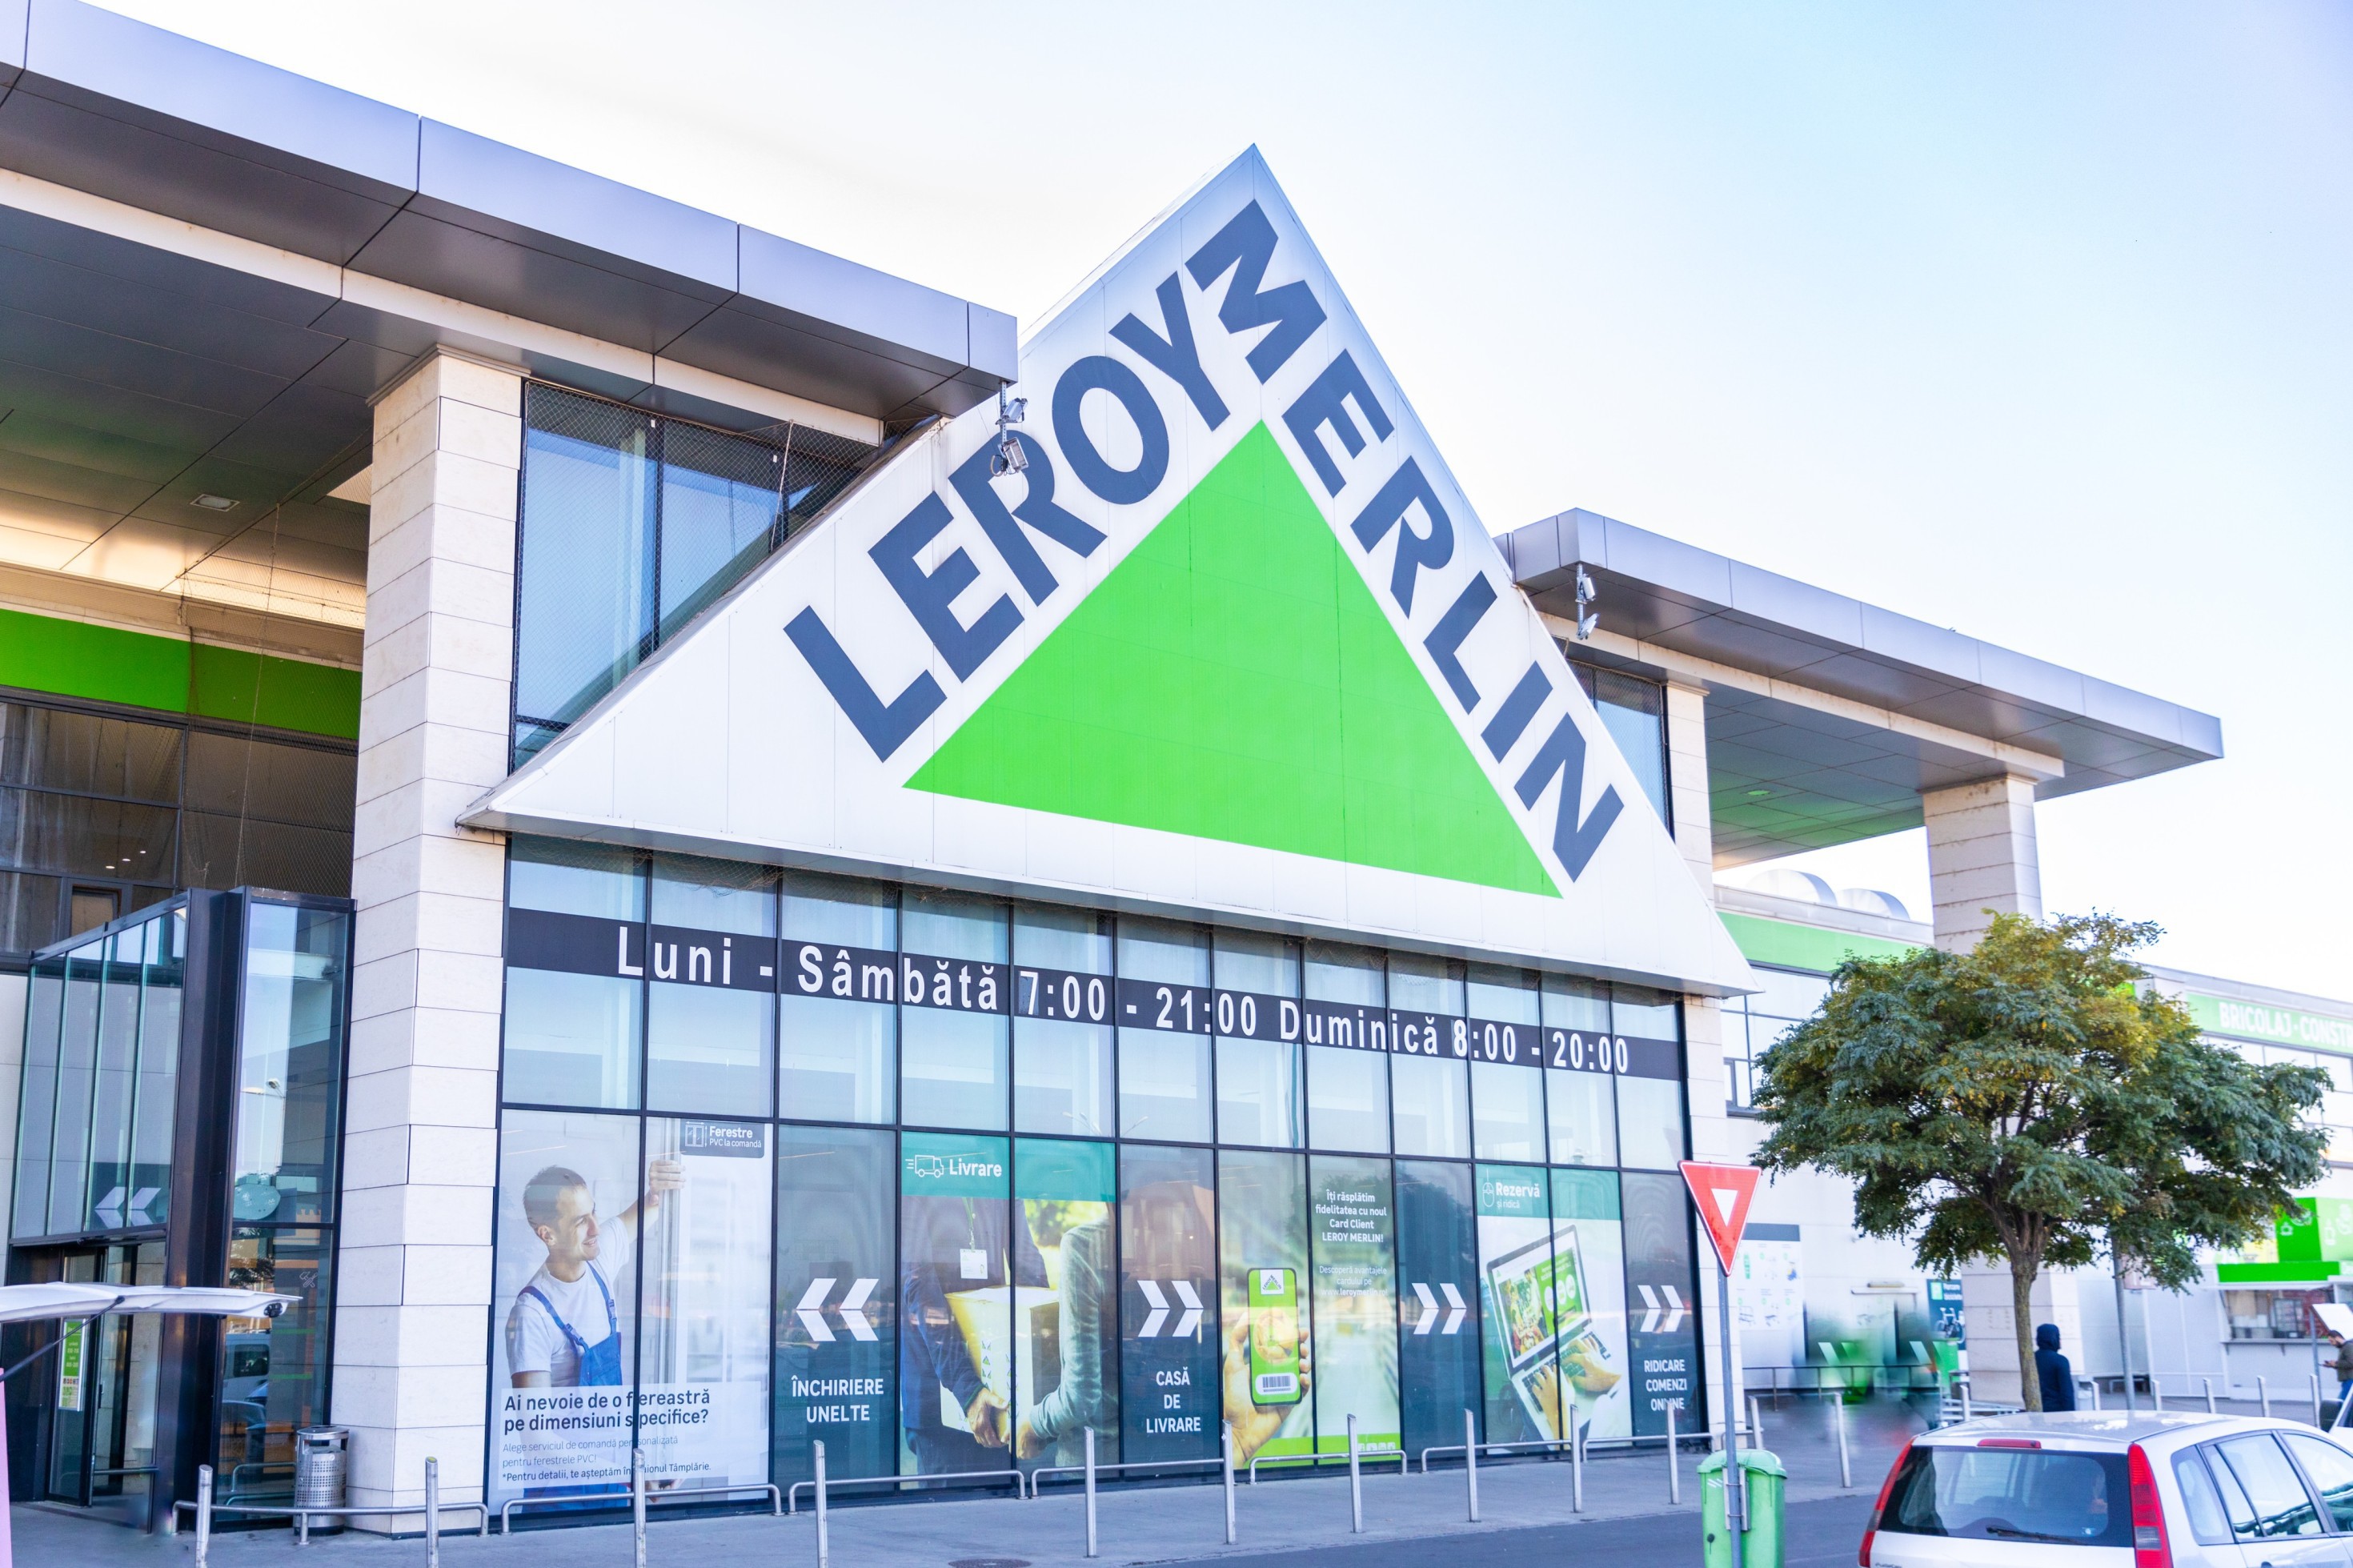 Tranzacţie: Leroy Merlin, al doilea cel mai mare retailer din piaţa locală de bricolaj, semnează cu austriecii de la Supernova pentru două spaţii de retail în Bucureşti, cu o suprafaţă totală de 21.000 mp